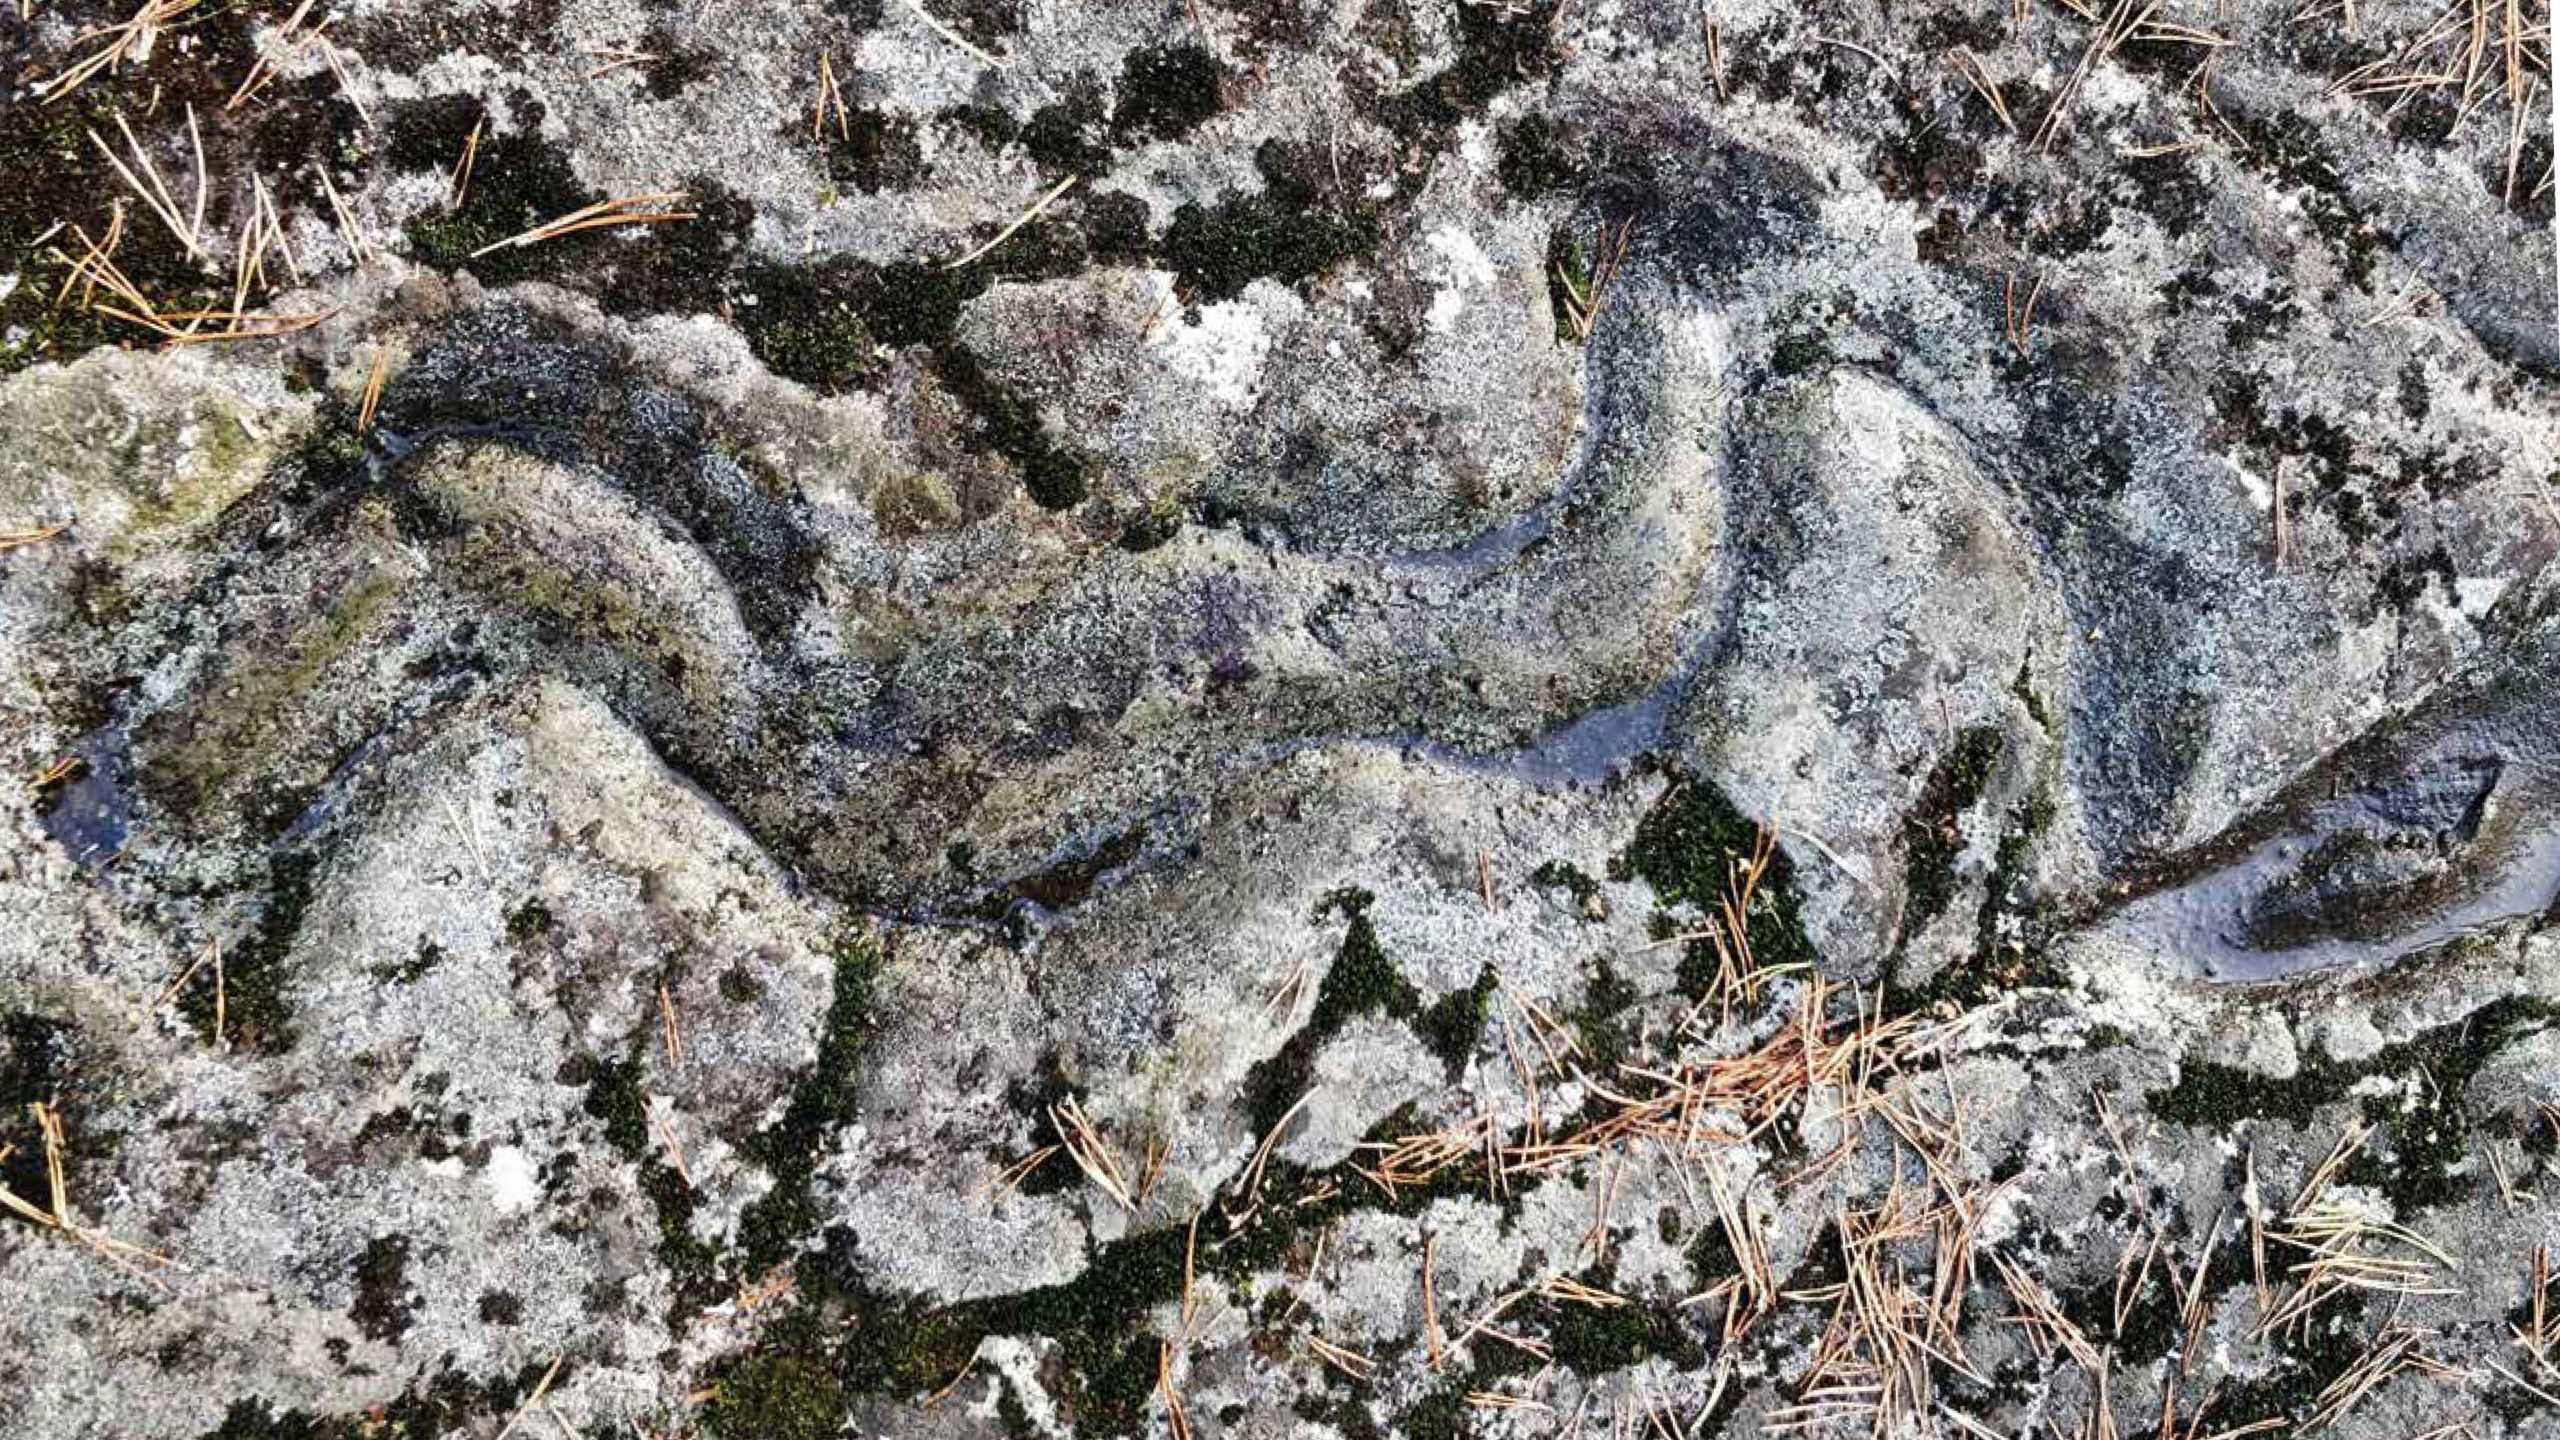 A snake's shape carved on a rock.